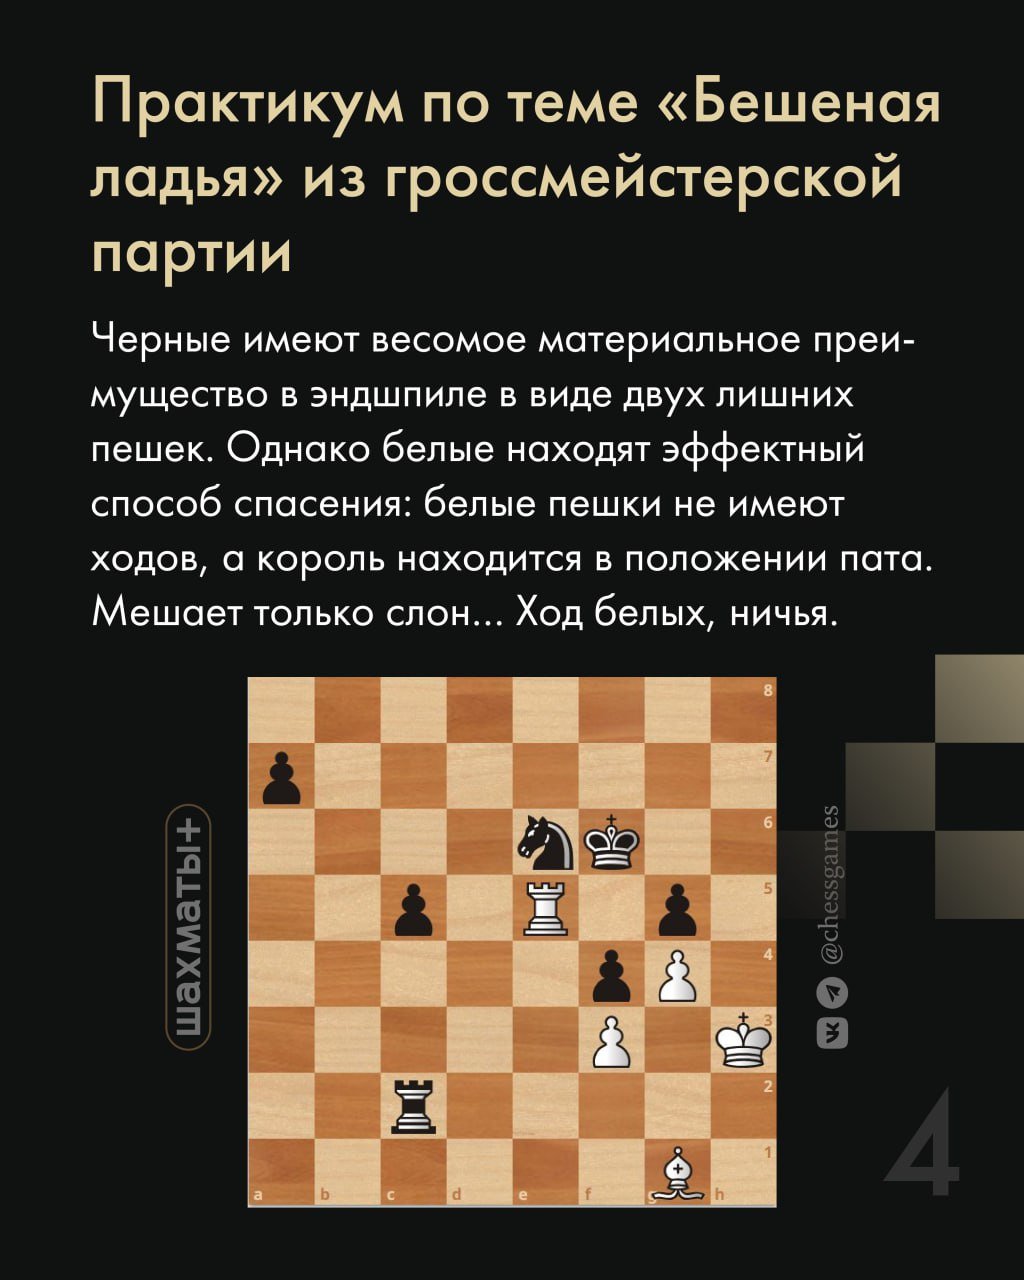 Положение в шахматах 8 букв. Положение шахмат. Шахматные приемы. Ситуации в шахматах. Шахматные позиции.